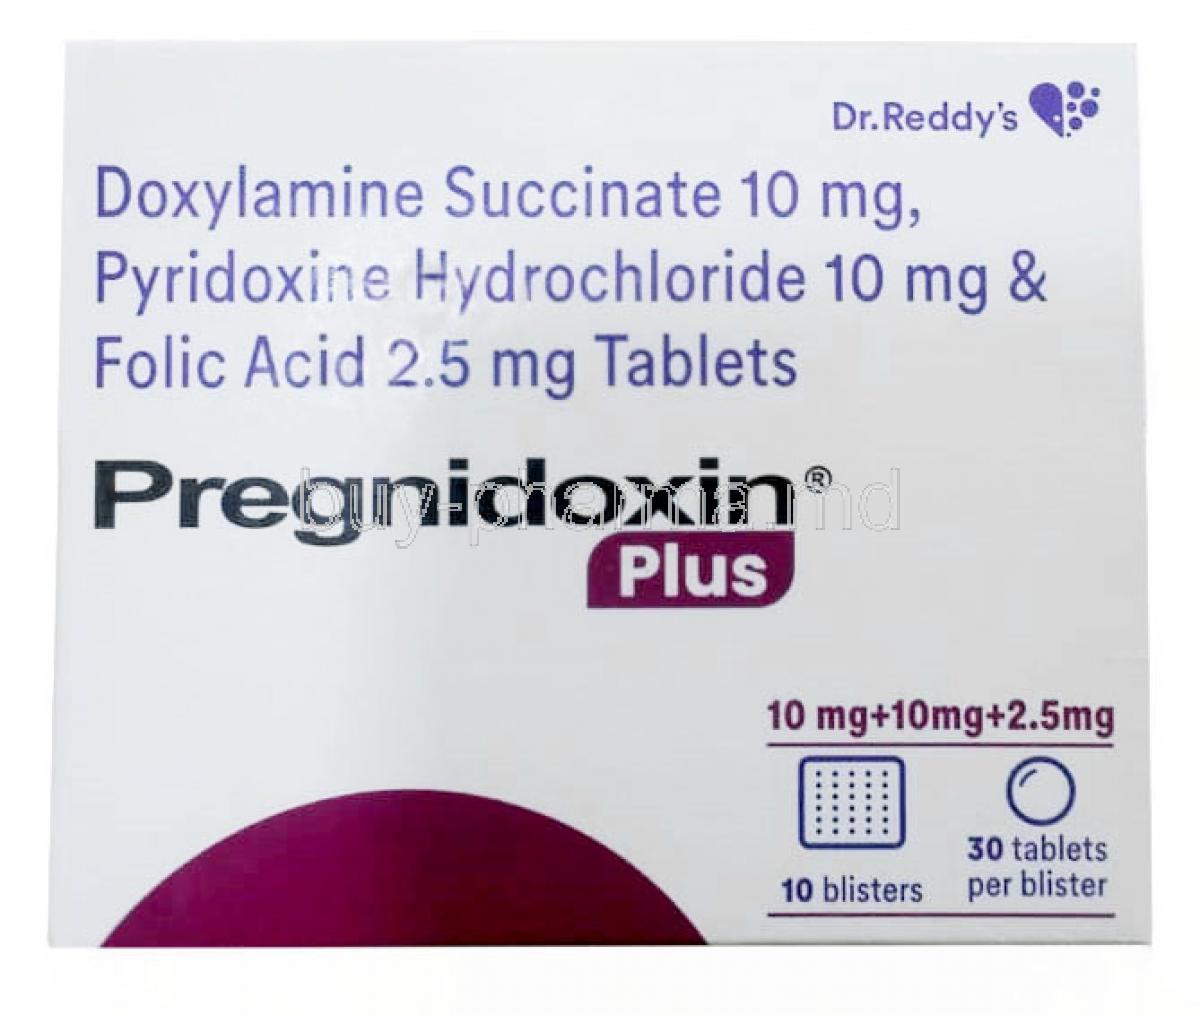 Pregnidoxin Plus, Doxylamine 10mg/ Vitamin B6(Pyridoxine) 10mg /Folic Acid 2.5mg, Dr Reddy's Laboratories Ltd, Box front view